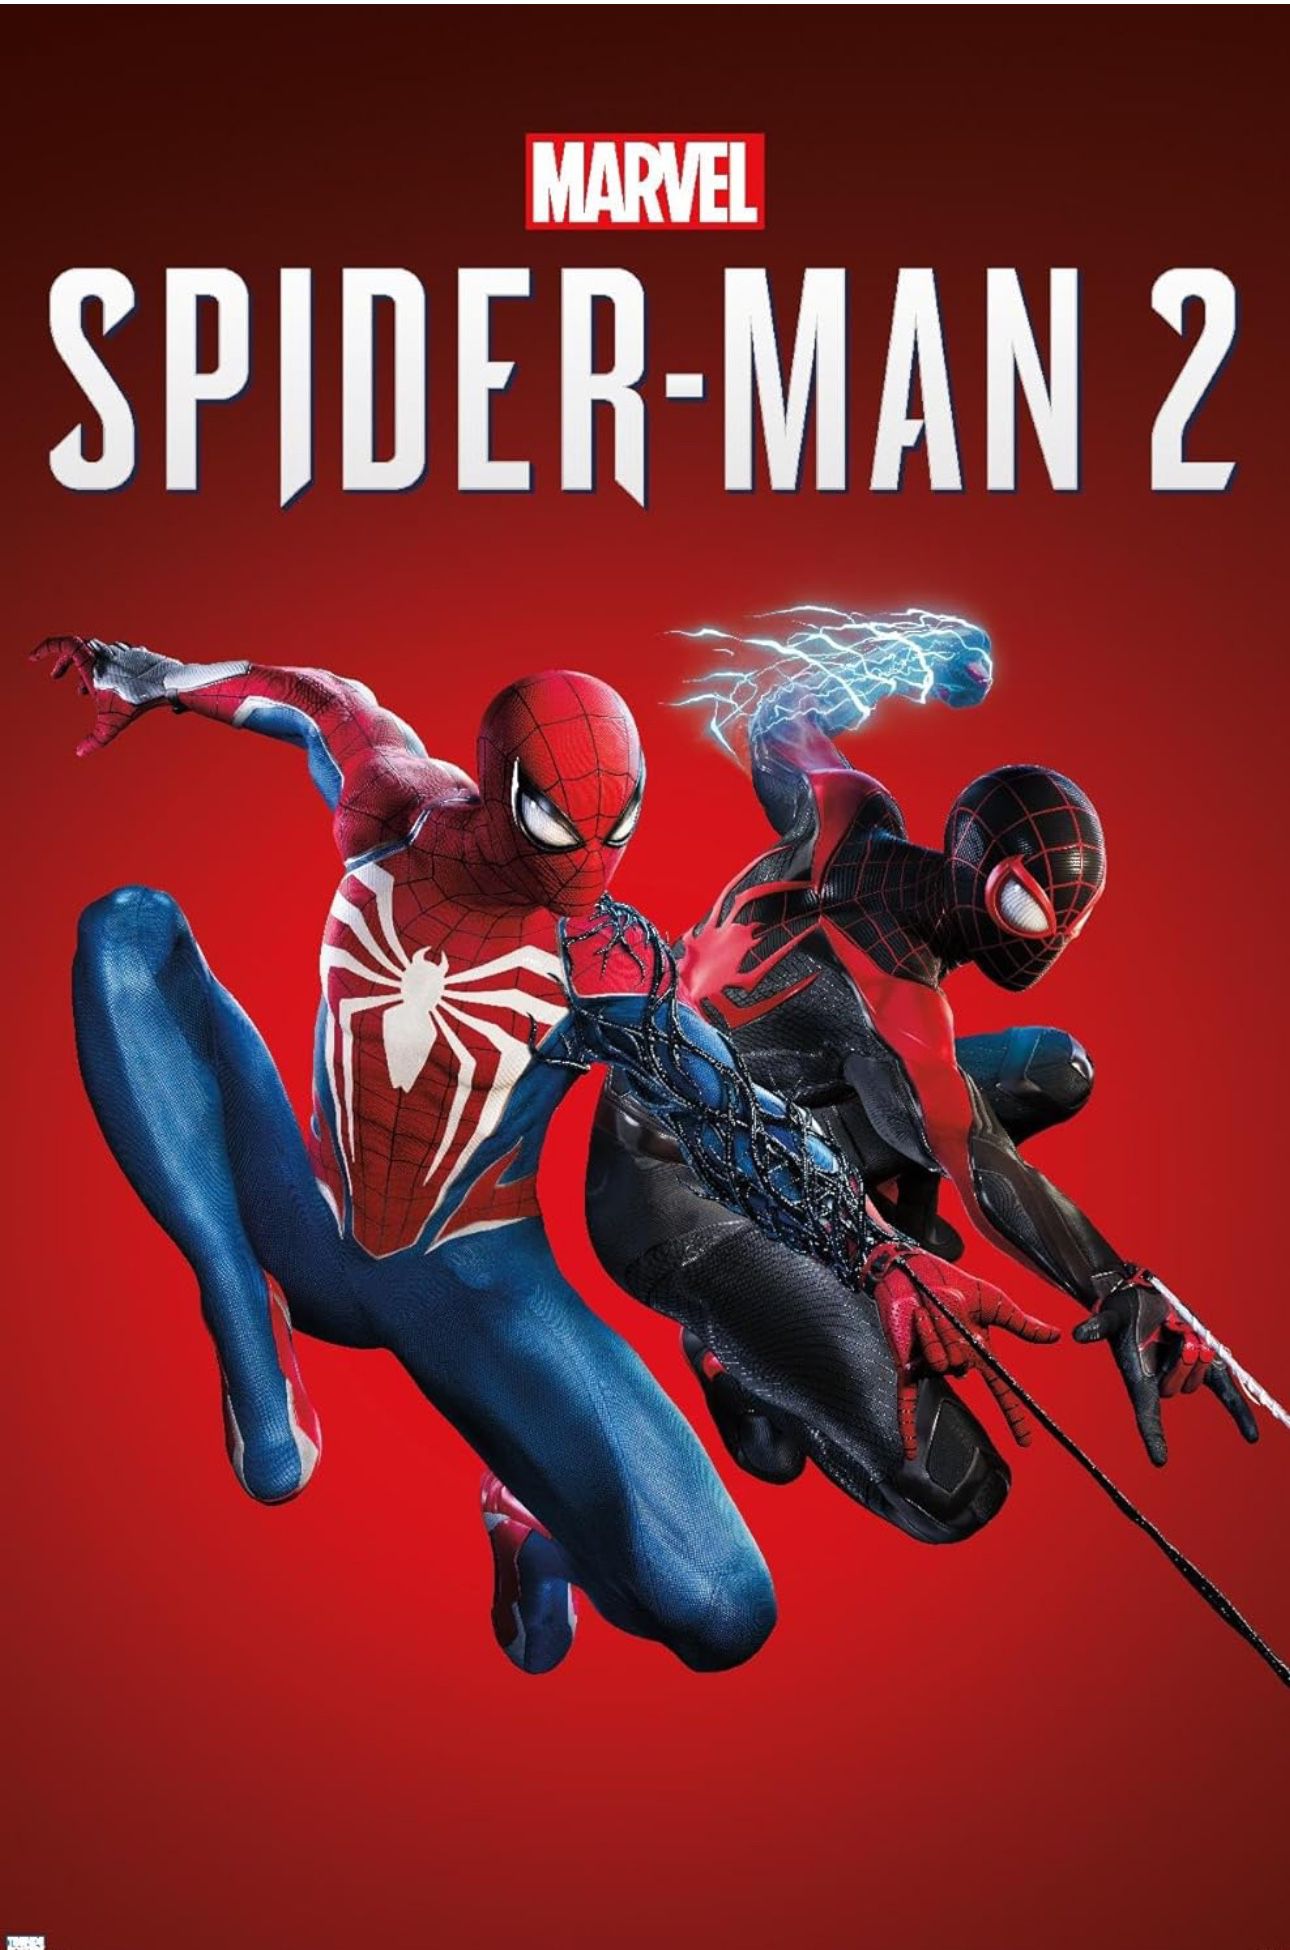 Spider-Man 2 PlayStation 5